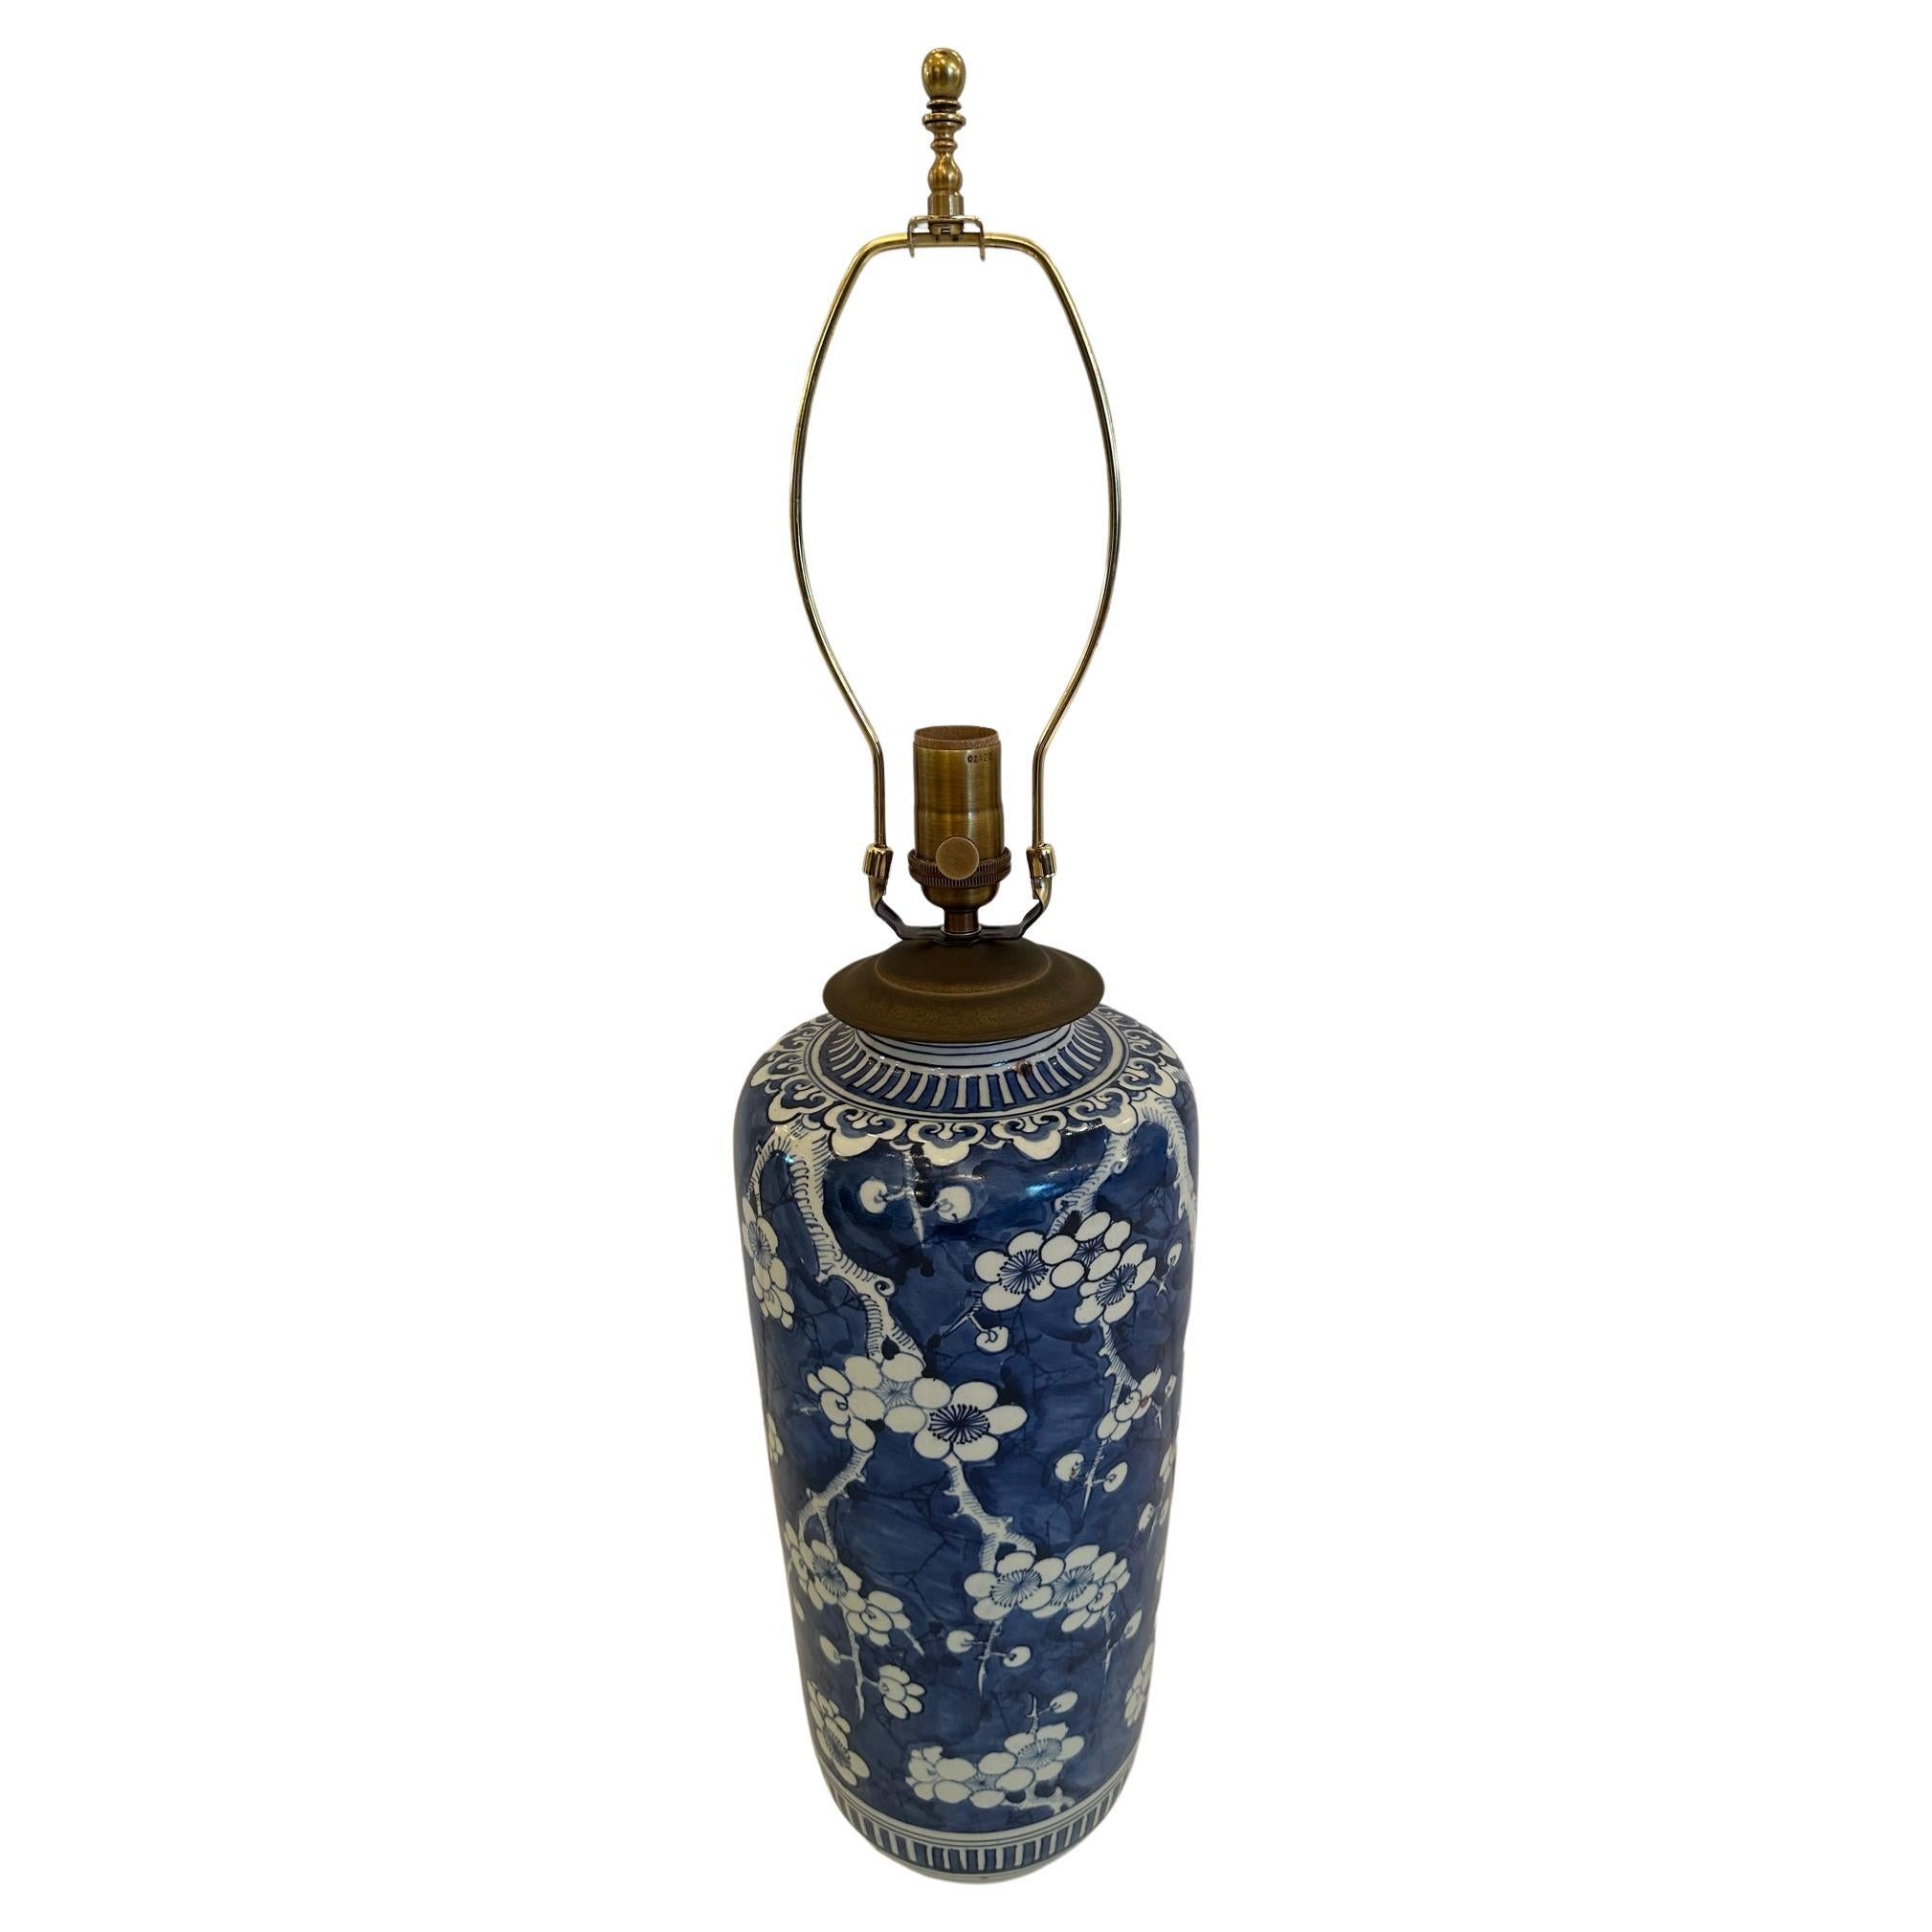 Lampe de table chinoise intemporelle, d'une élégance classique, de couleur bleue et blanche, avec de jolies décorations florales.  L'abat-jour personnalisé a une hauteur de 10